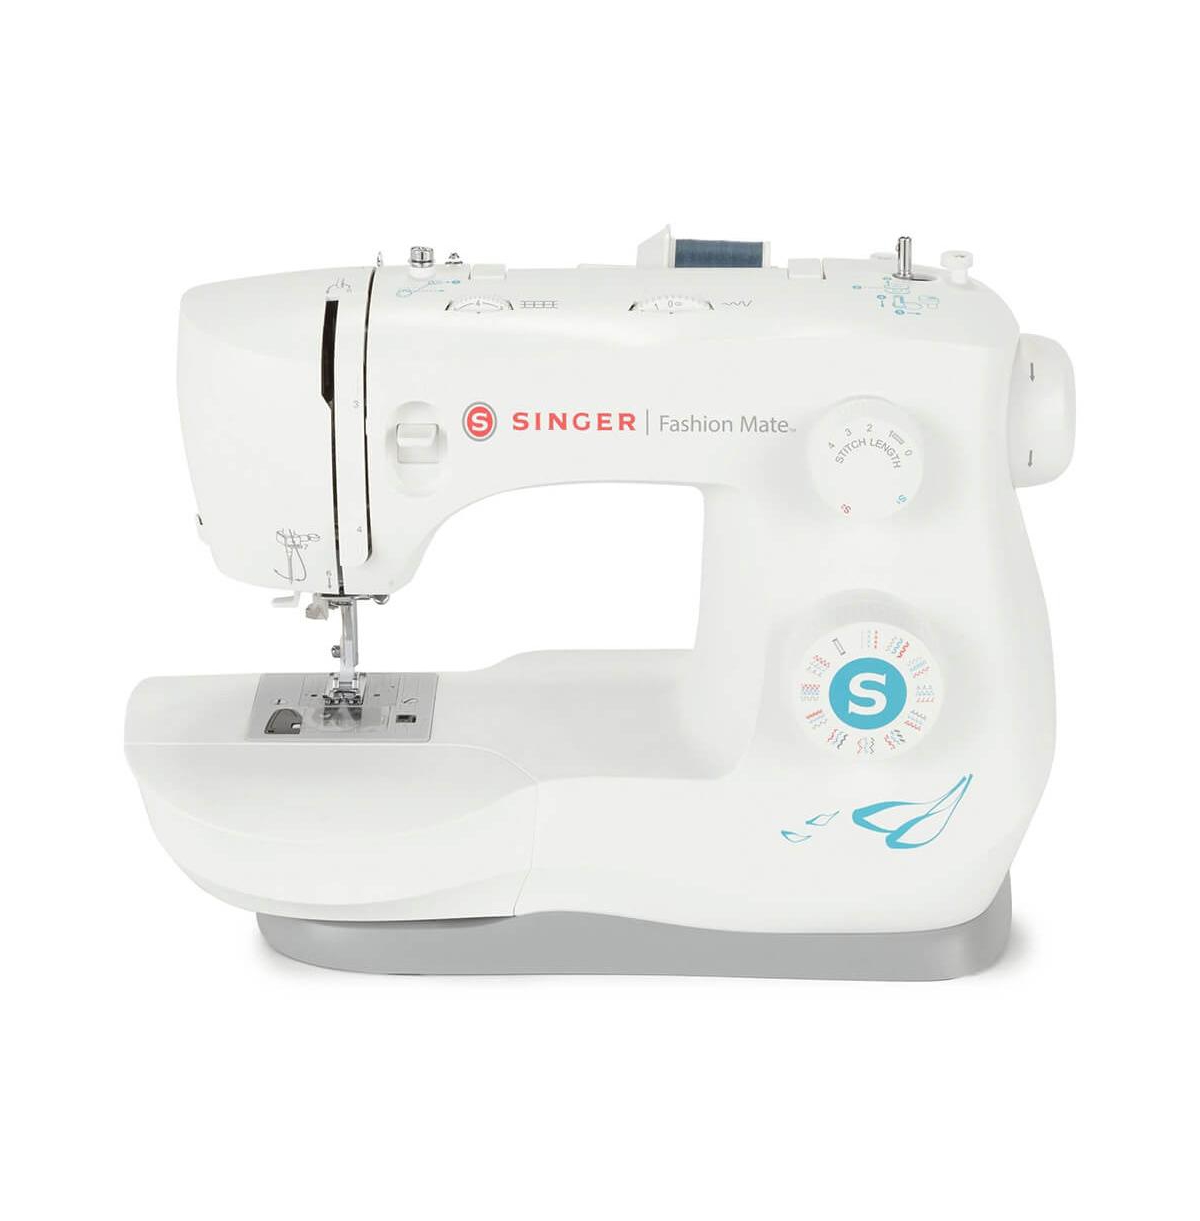 Fashion Mate Sewing Machine - White